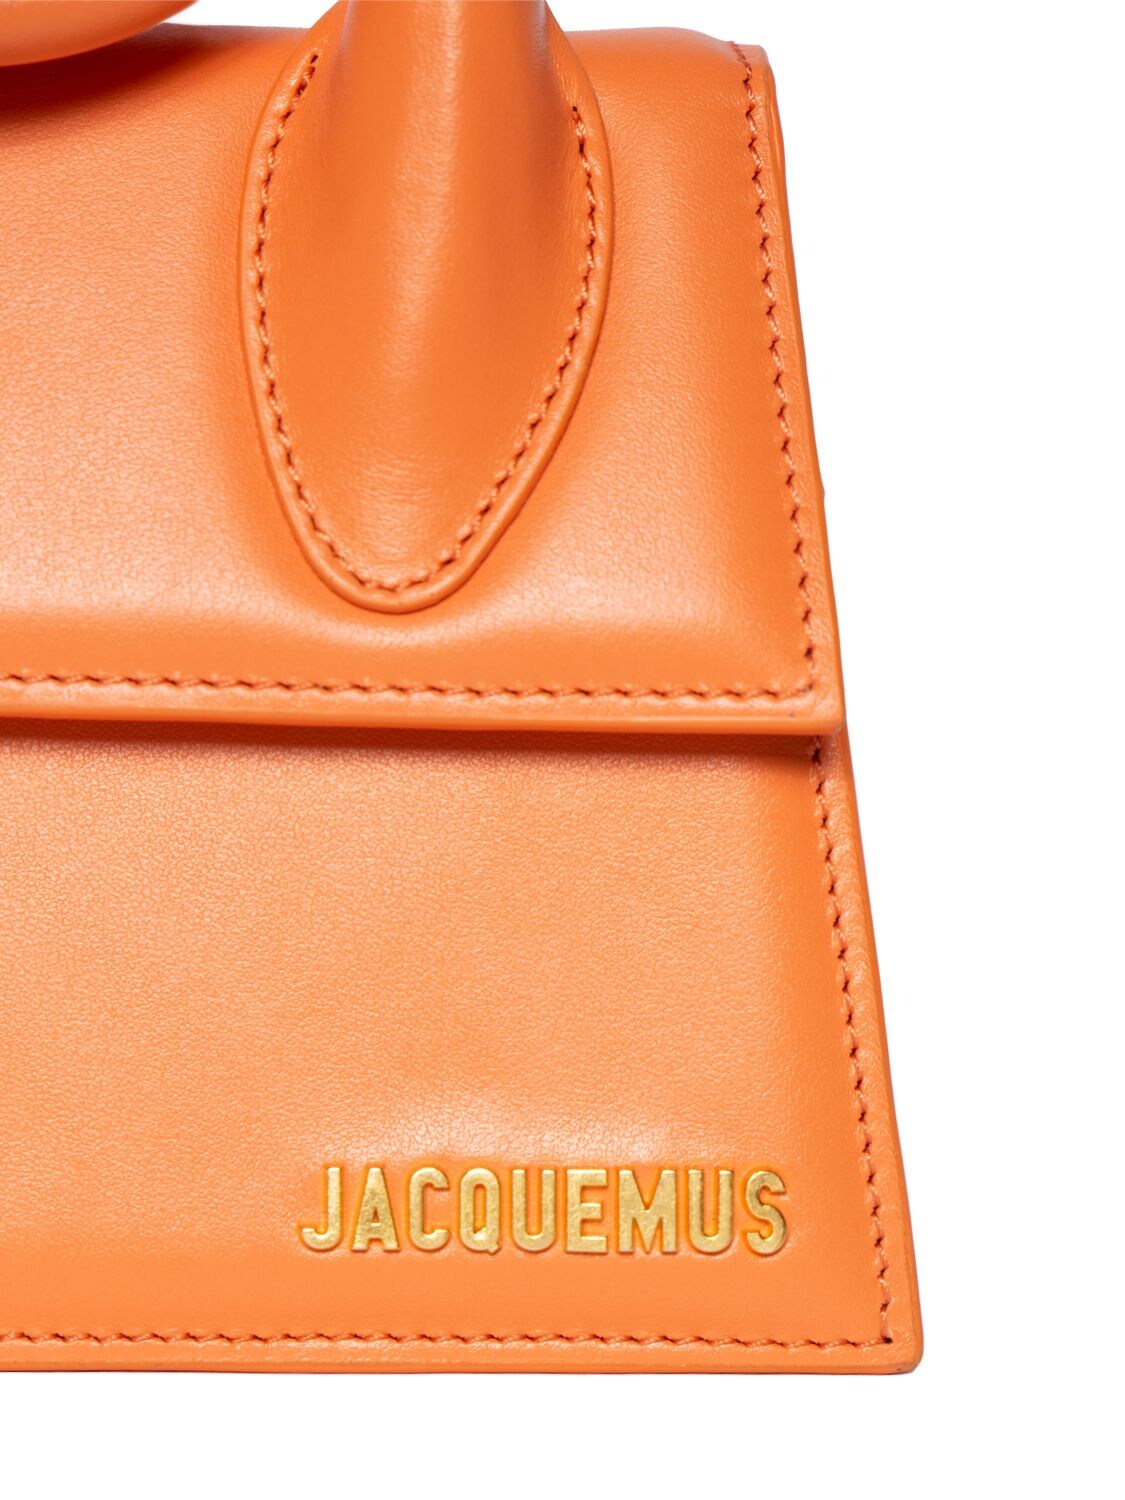 Jacquemus - Le Chiquito - Orange